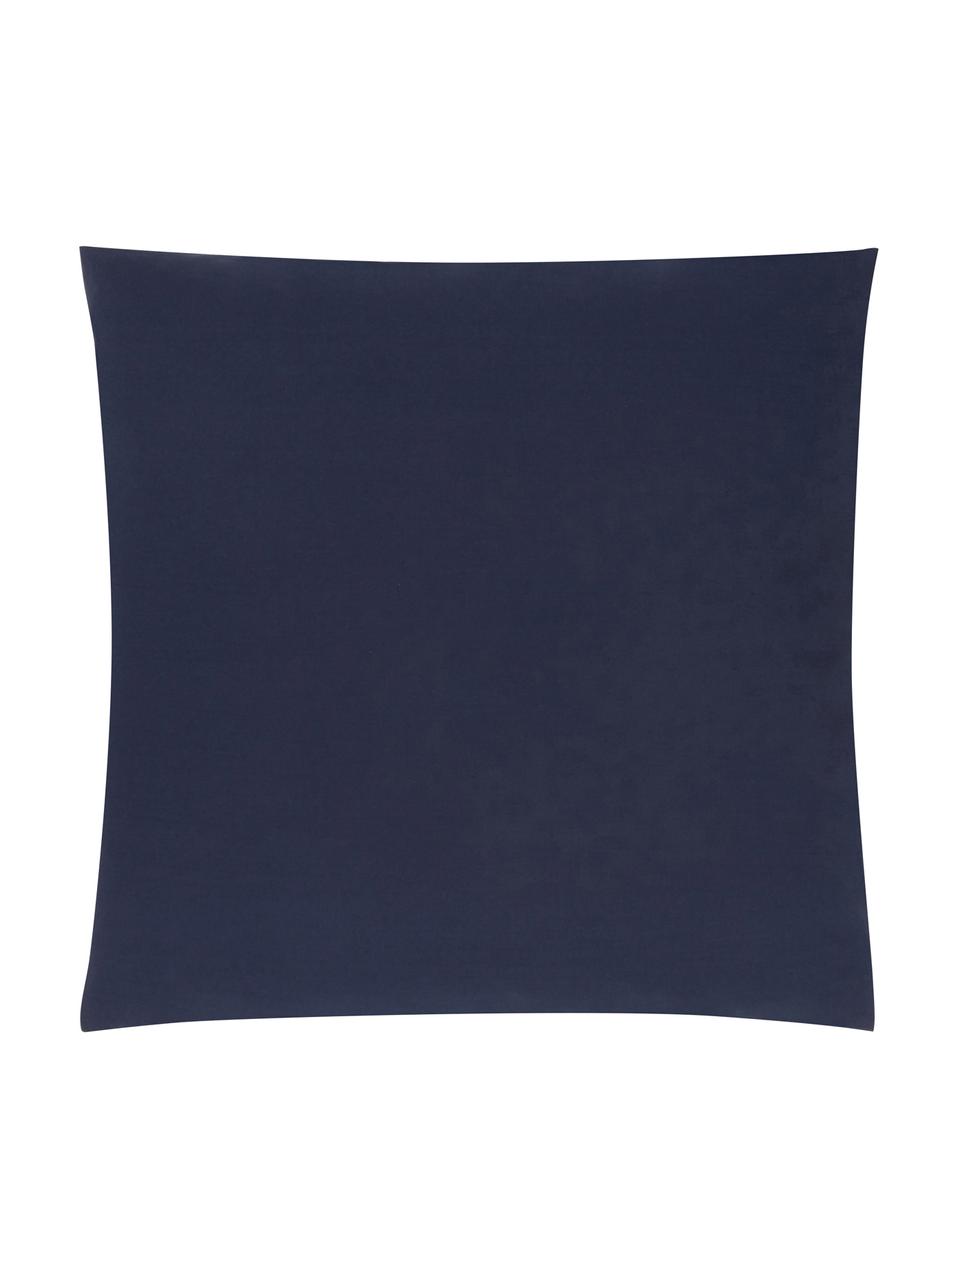 Taies d'oreiller en percale de coton bleu foncé Elsie, 2 pièces, 65 x 65 cm, Bleu foncé, larg. 65 x long. 65 cm